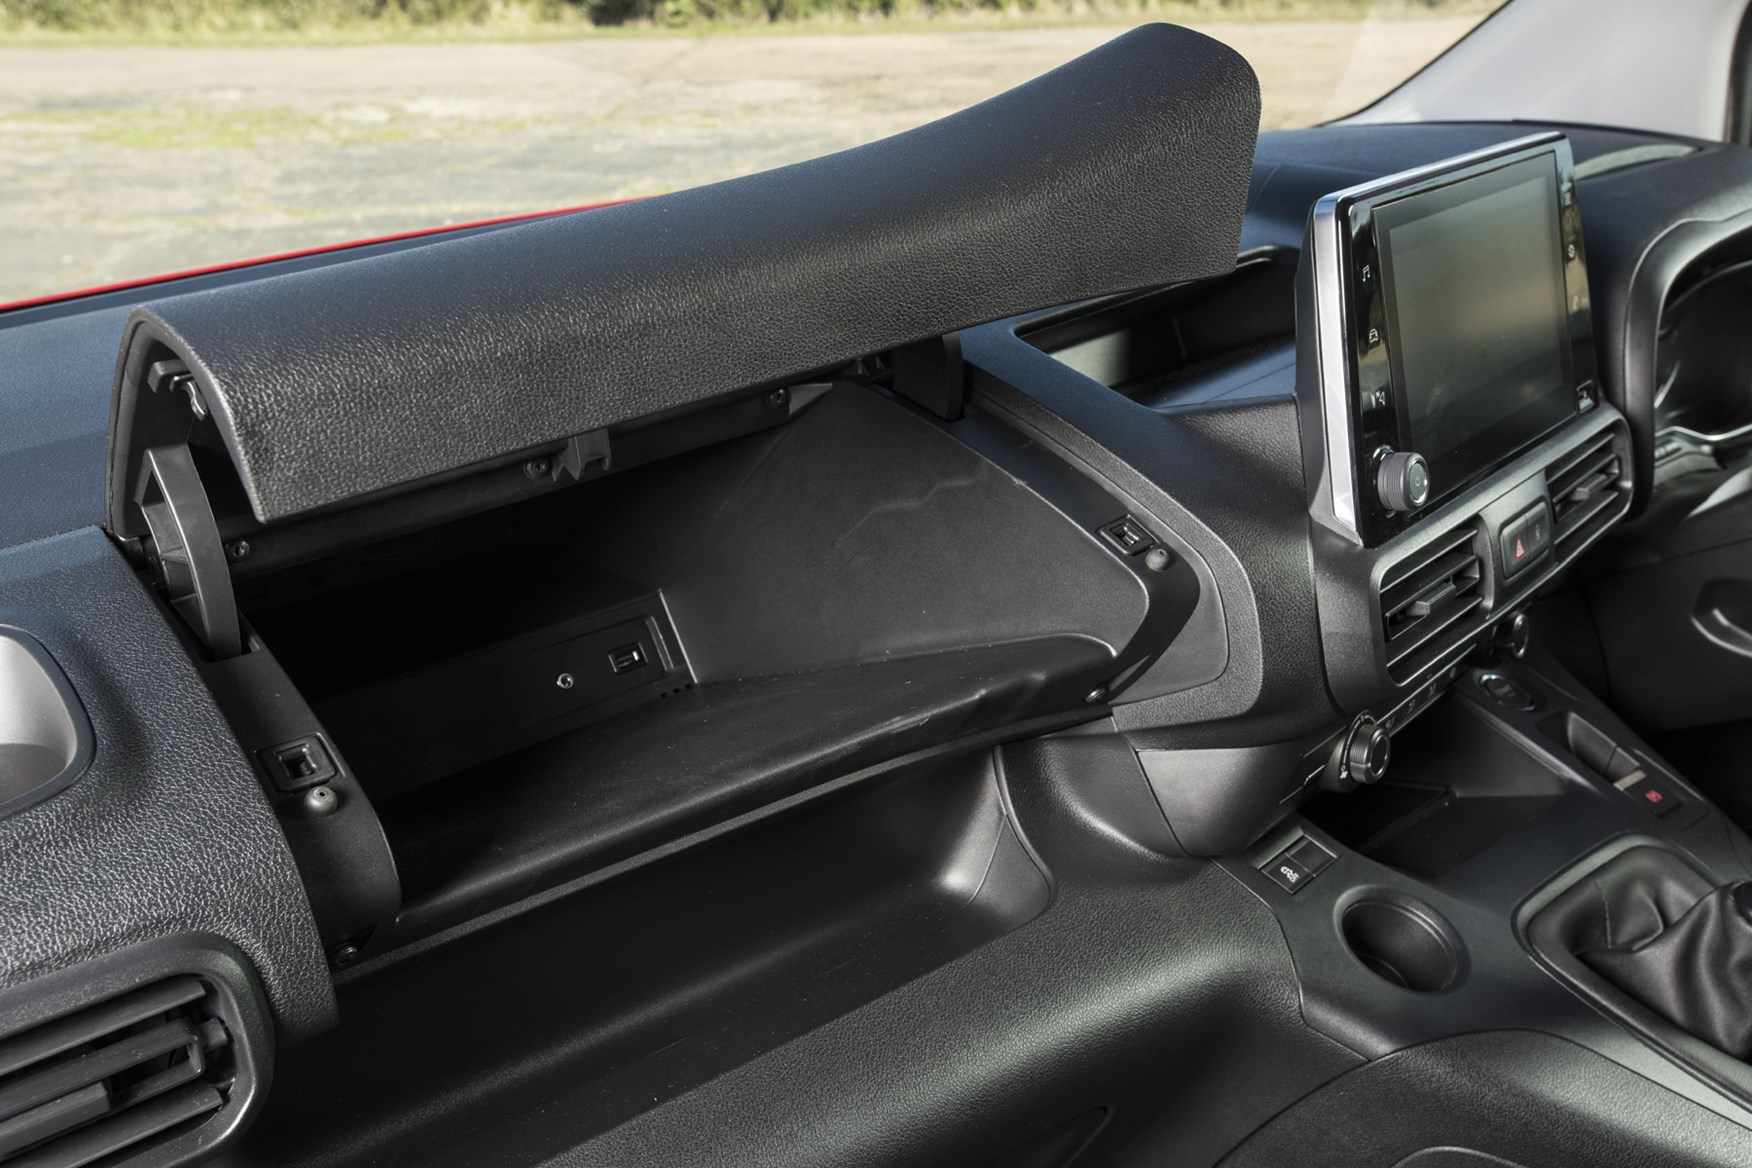 Citroen Berlingo van review - 2019 model, in-cab storage space